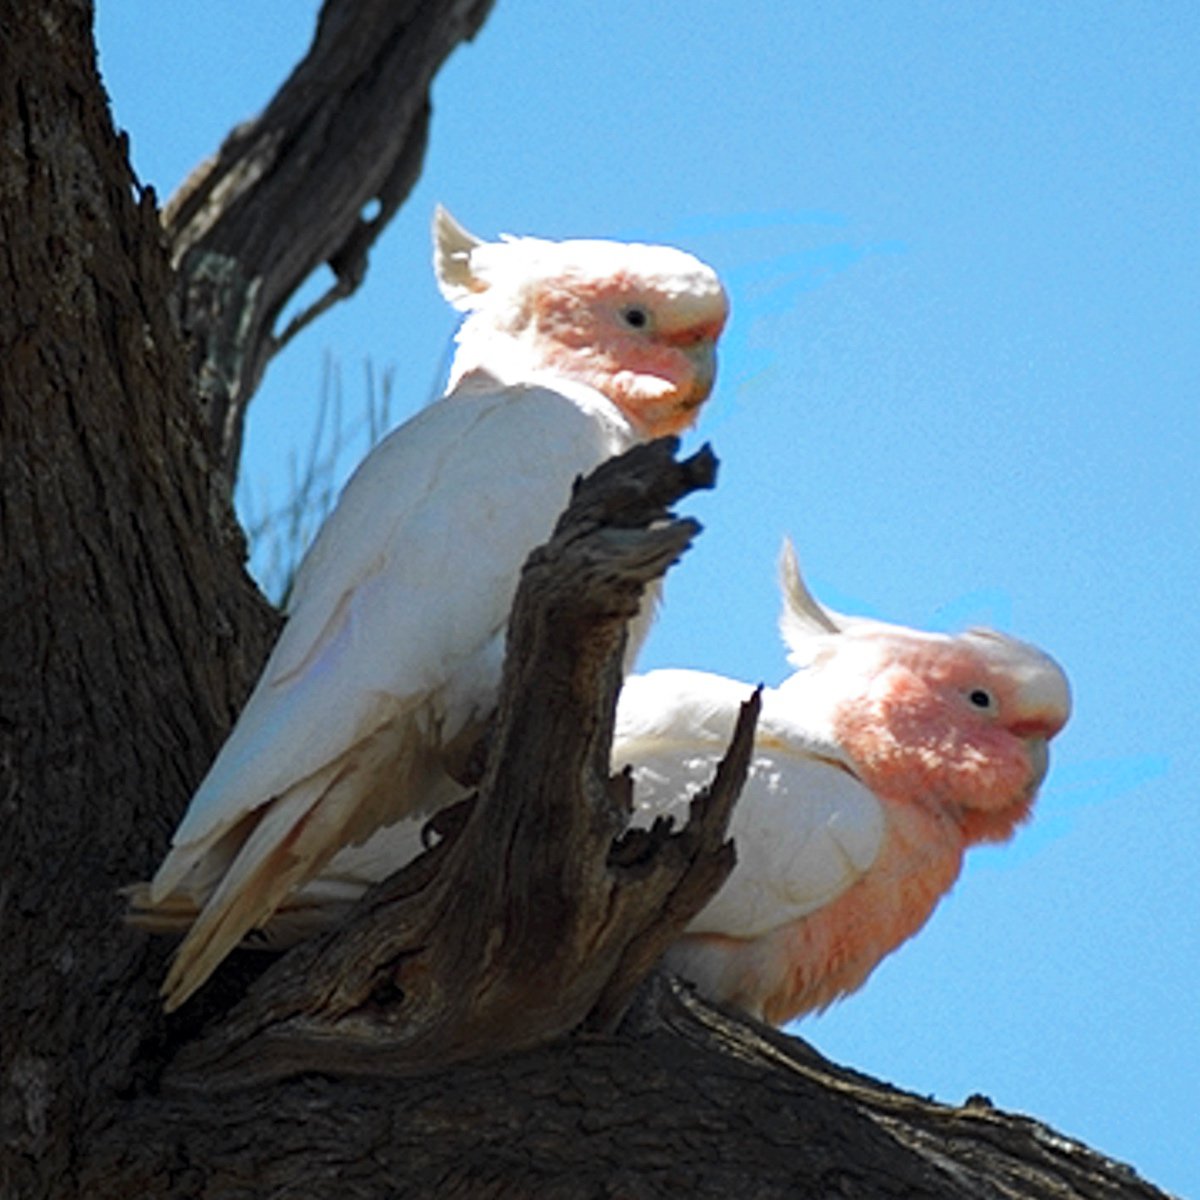 cockatoo species that arent loud